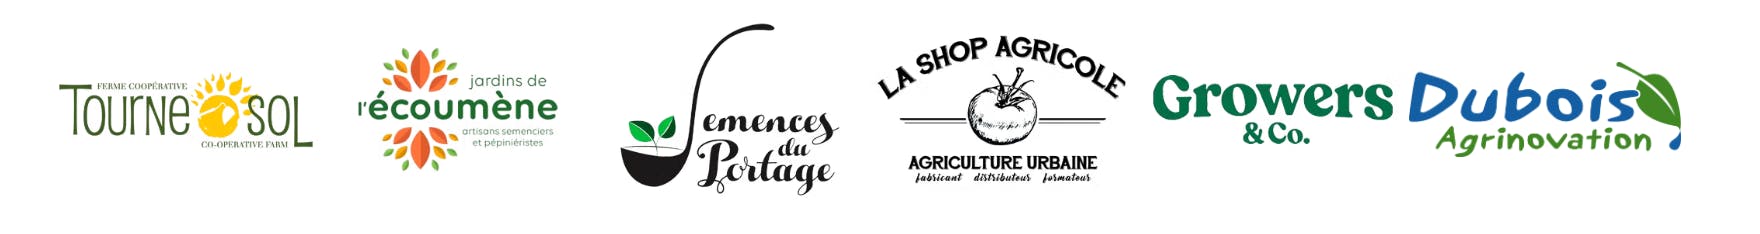 Partenaires : Coop tournesol, Écoumène, Semences du portage, La shop agricole, Growers, Dubois agrinovation